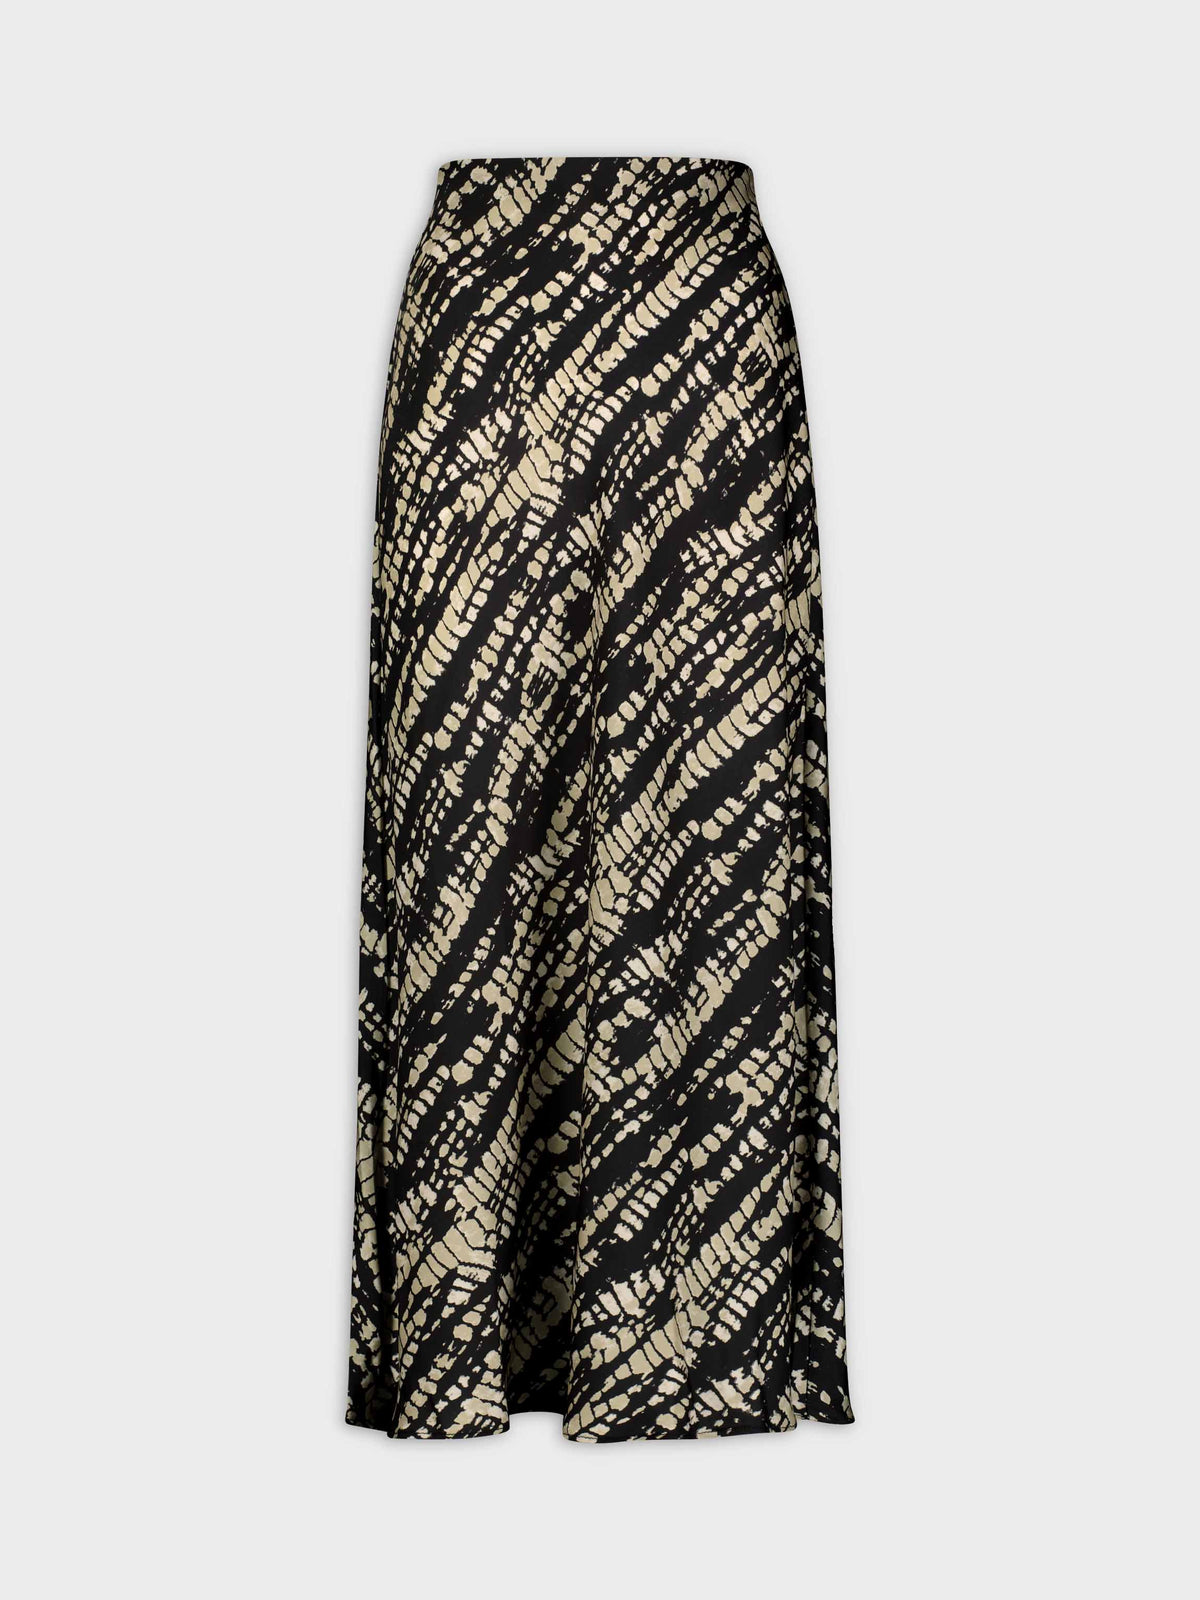 Printed Satin Slip Skirt-Snake Skin